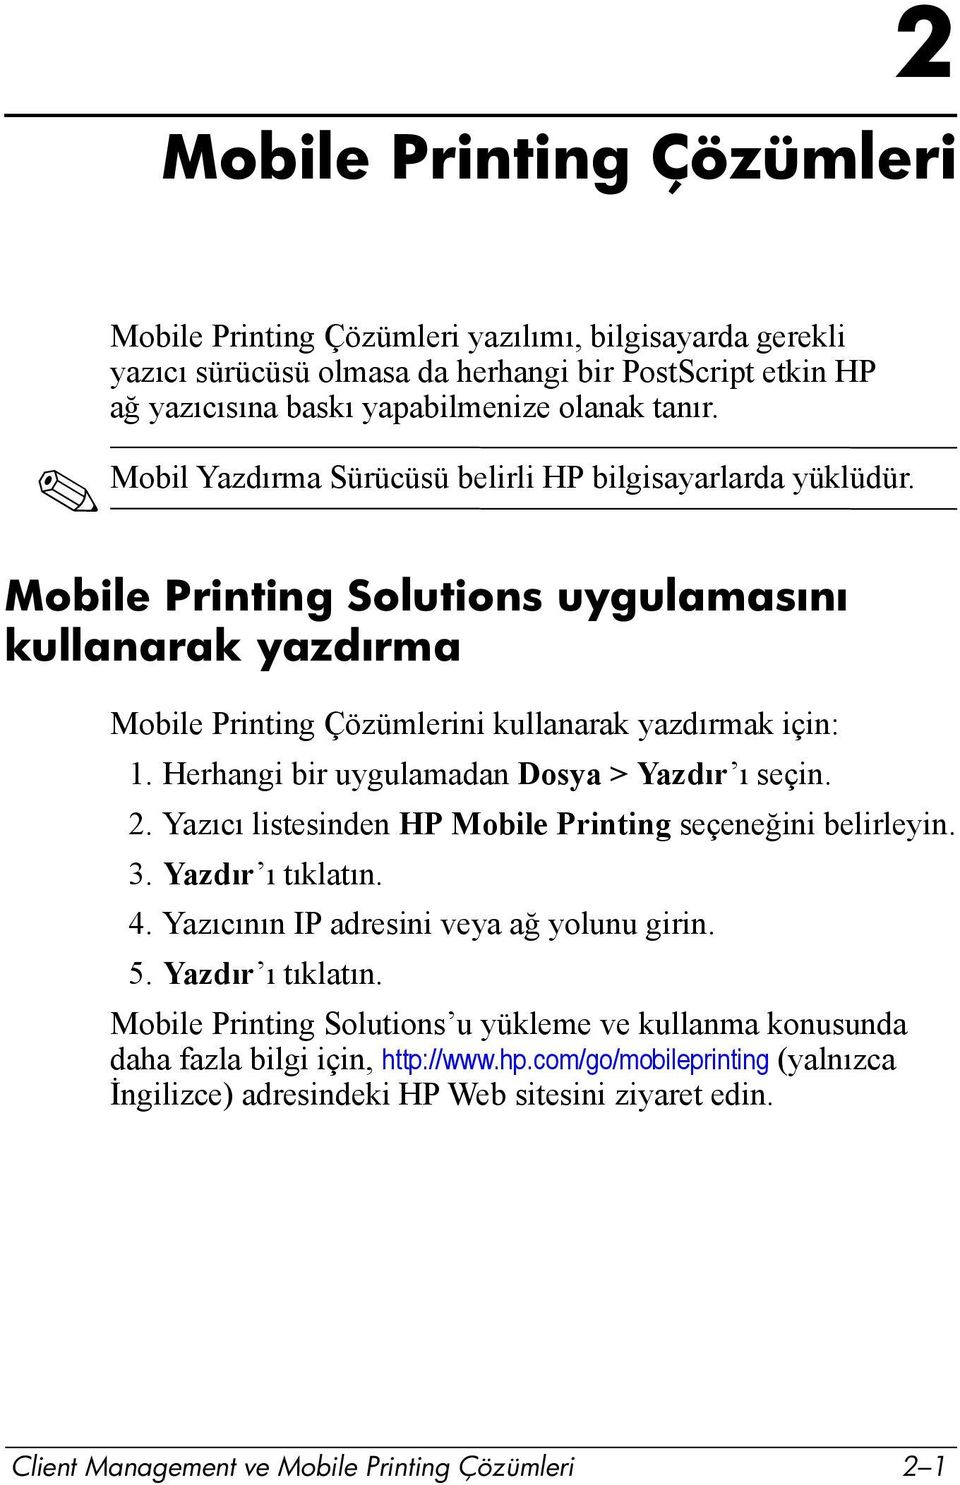 Herhangi bir uygulamadan Dosya > Yazdõr õ seçin. 2. Yazõcõ listesinden HP Mobile Printing seçeneğini belirleyin. 3. Yazdõr õ tõklatõn. 4. Yazõcõnõn IP adresini veya ağ yolunu girin. 5.